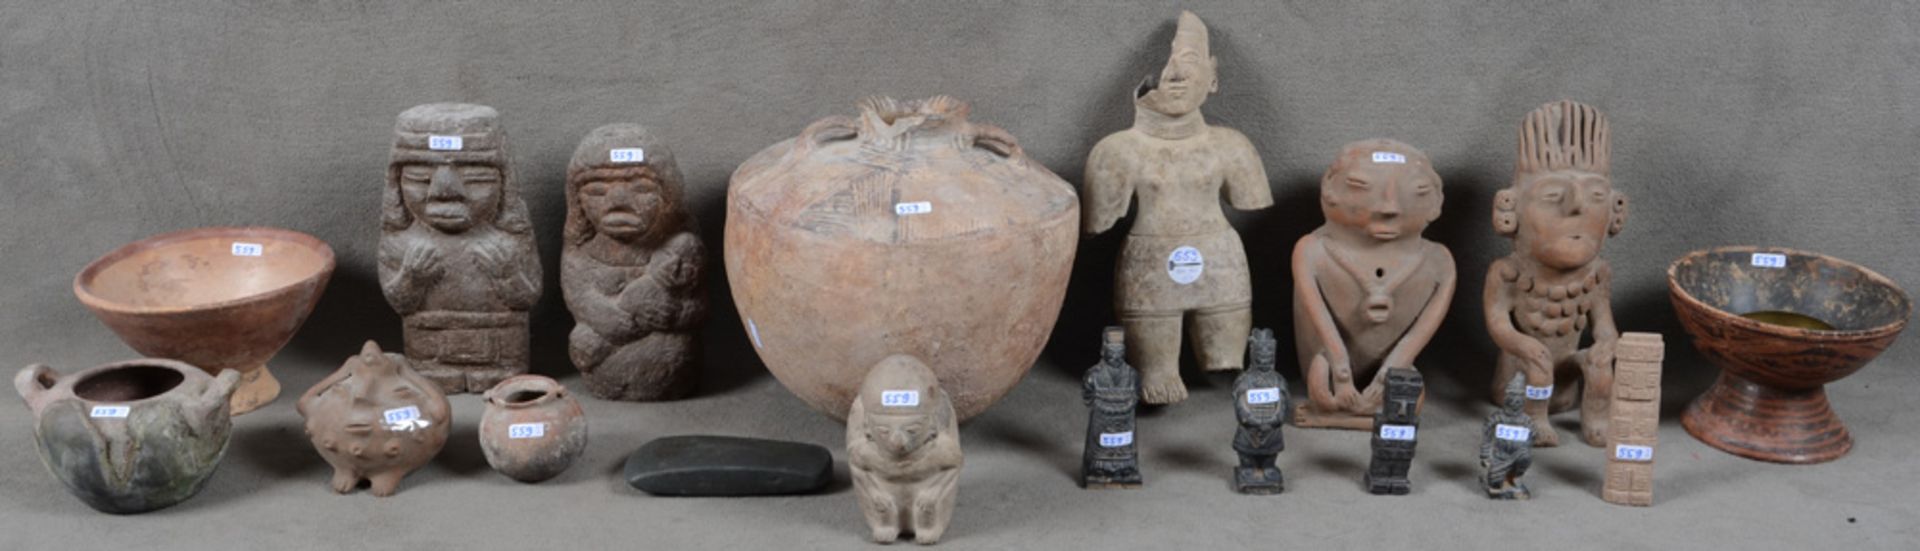 18-tlgs. Konvolut Volkskunst aus Südamerika. Keramik / Stein, u.a. Figuren, Krüge, Schalen und